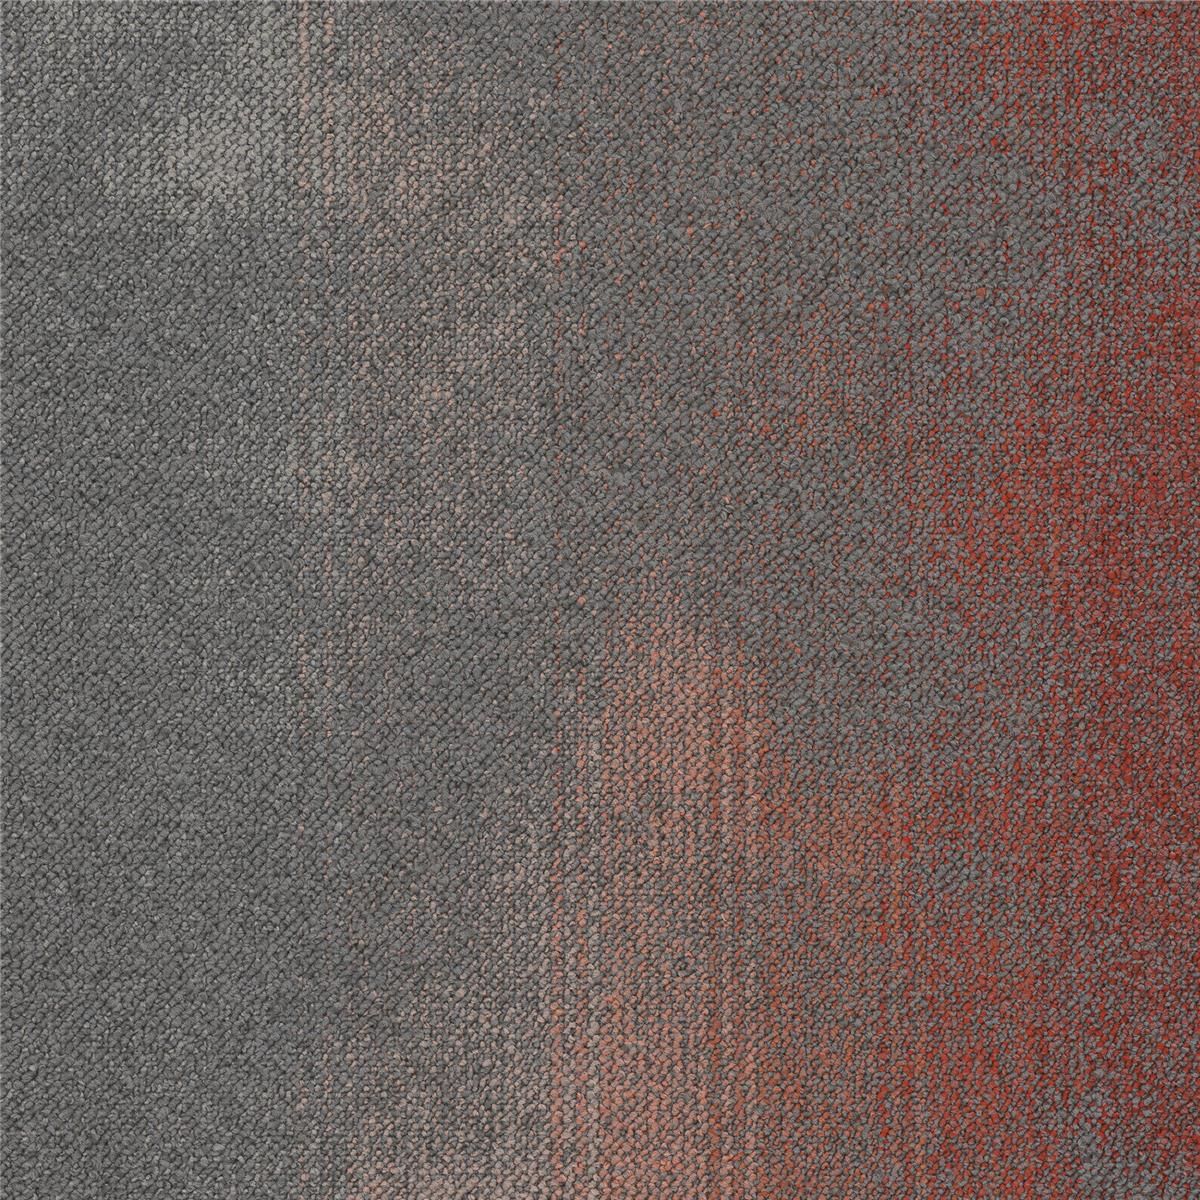 Teppichfliesen 50 x 50 cm Schlinge strukturiert Sere Colour AB94 5031 B8 Rot Organisch